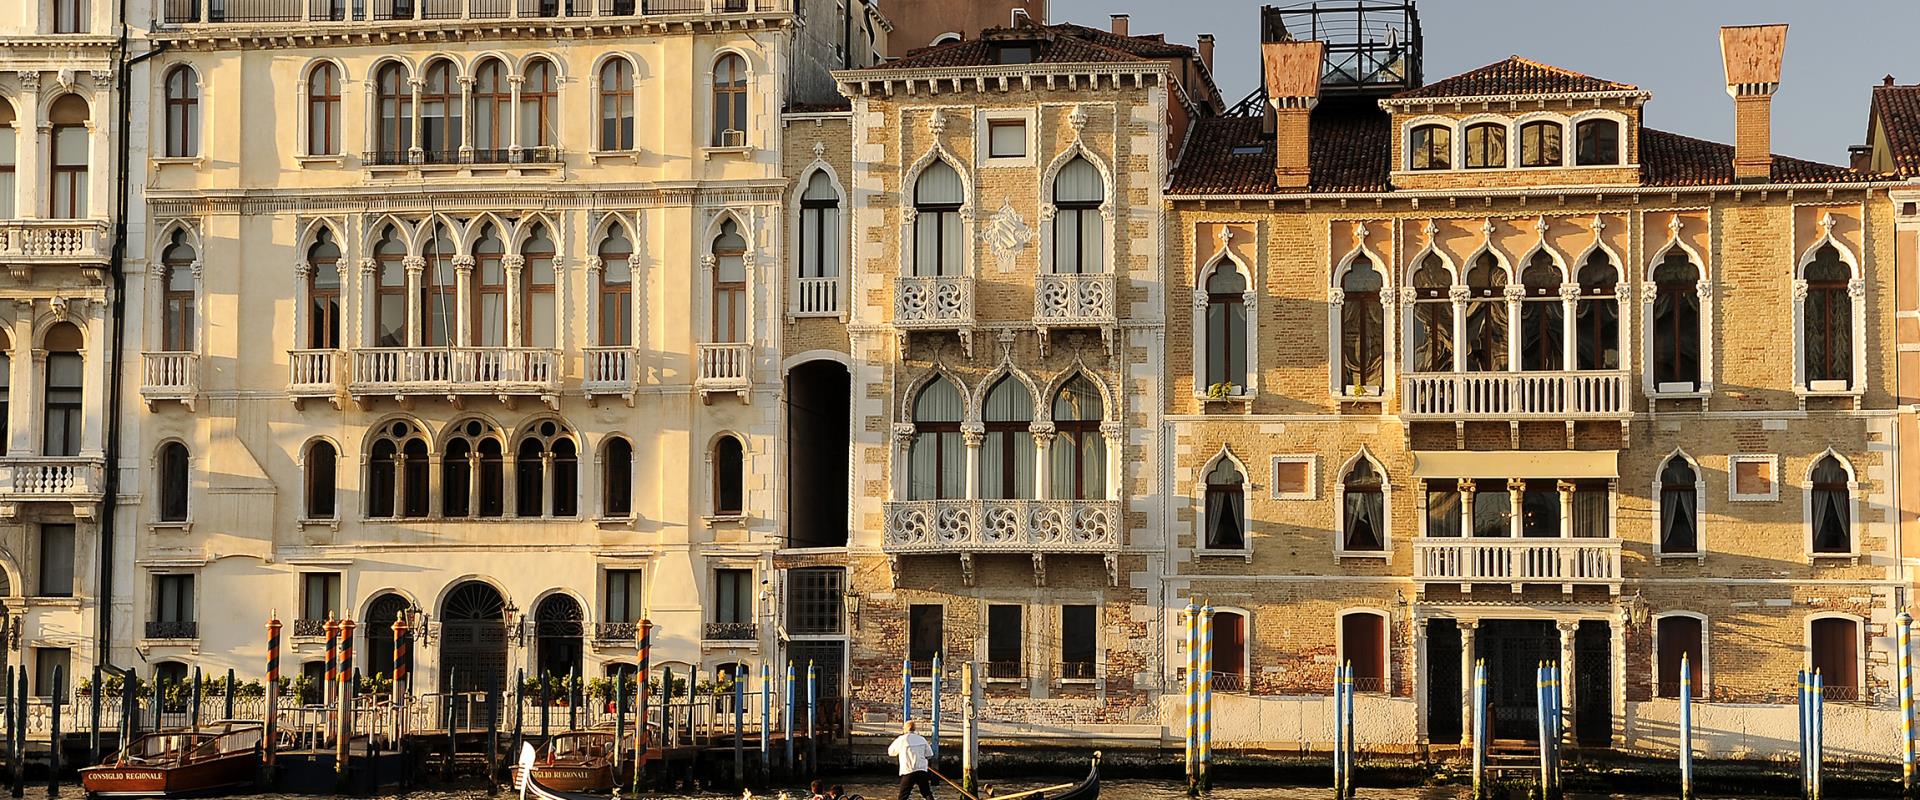 Cerchi un hotel 4 stelle vicino a Venezia? Best Western Plus Hotel Bologna, a Mestre, ti permette di raggiungere in pochi minuti e comodamente il centro storico di Venezia!